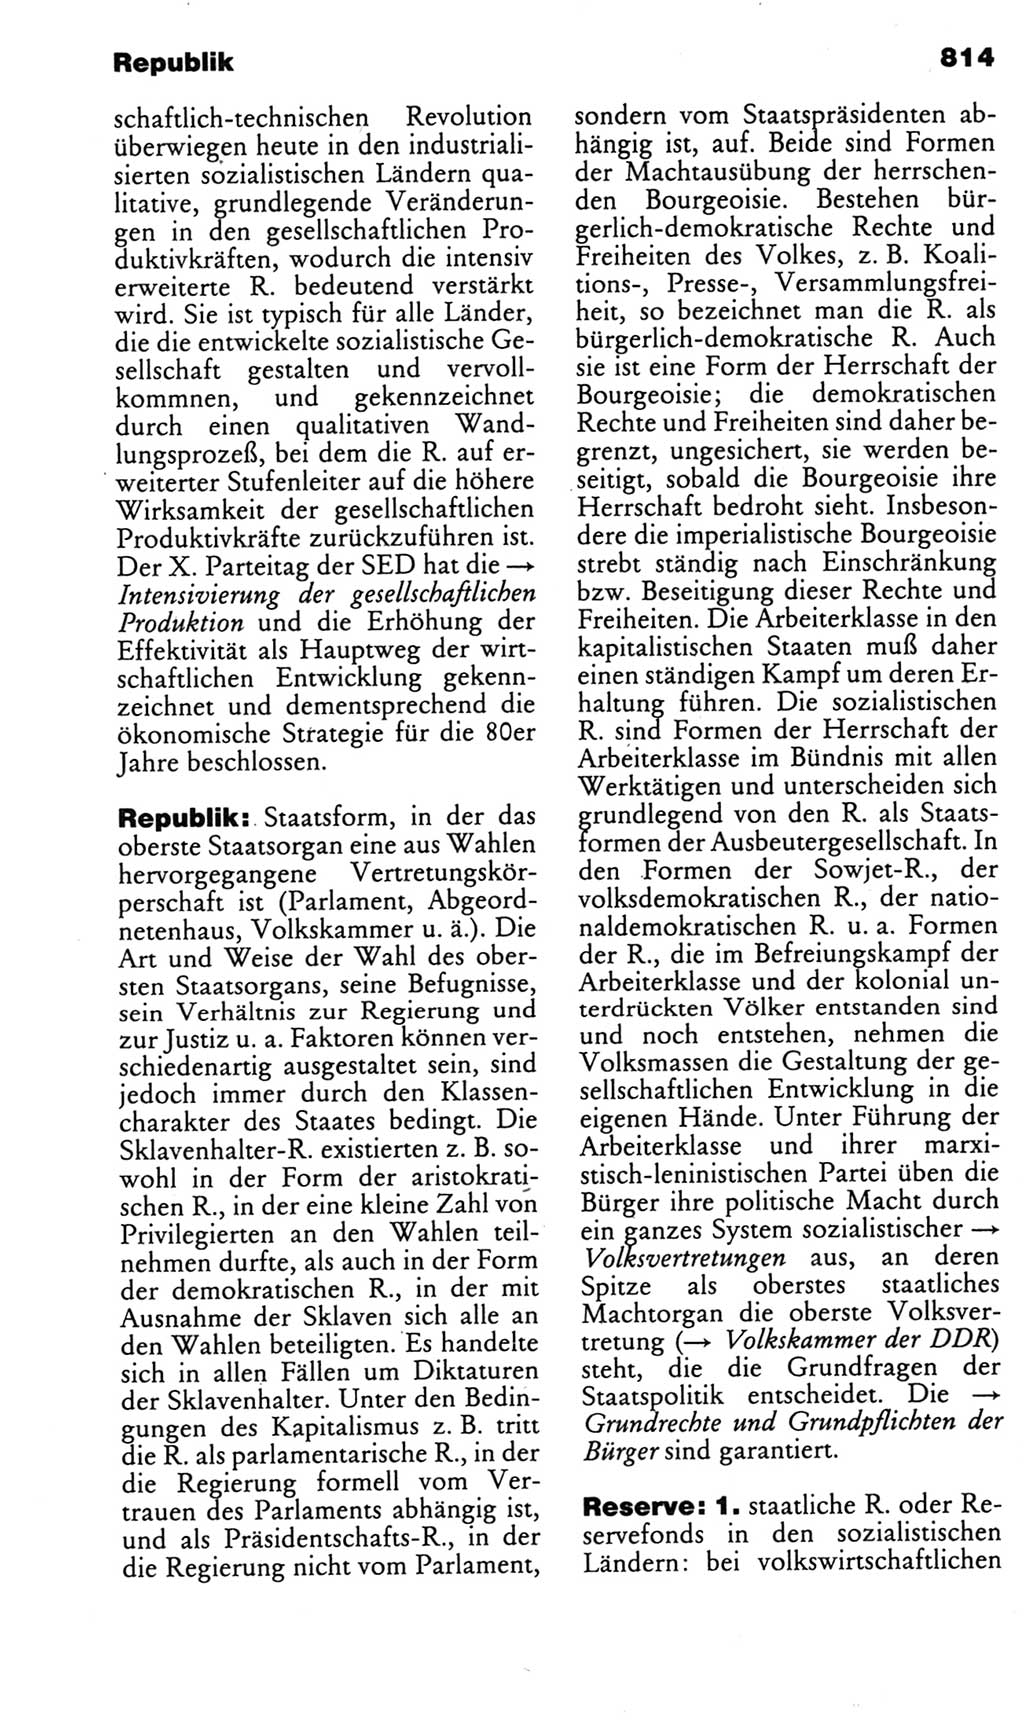 Kleines politisches Wörterbuch [Deutsche Demokratische Republik (DDR)] 1985, Seite 814 (Kl. pol. Wb. DDR 1985, S. 814)